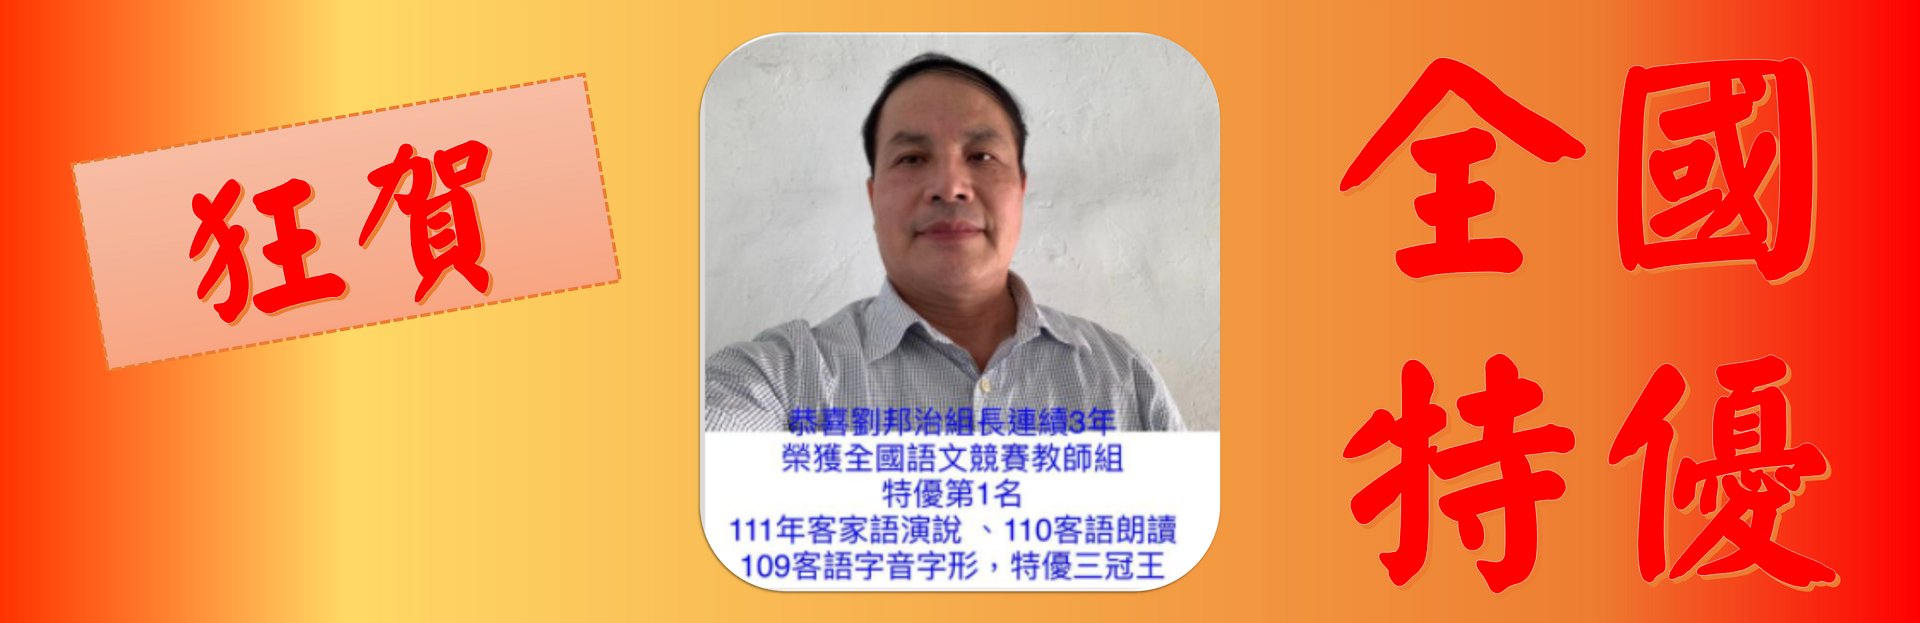 劉邦治組長連續3年（111、110、109年)代表 臺中市參加全國語文競賽榮獲 教師組 特優第1名